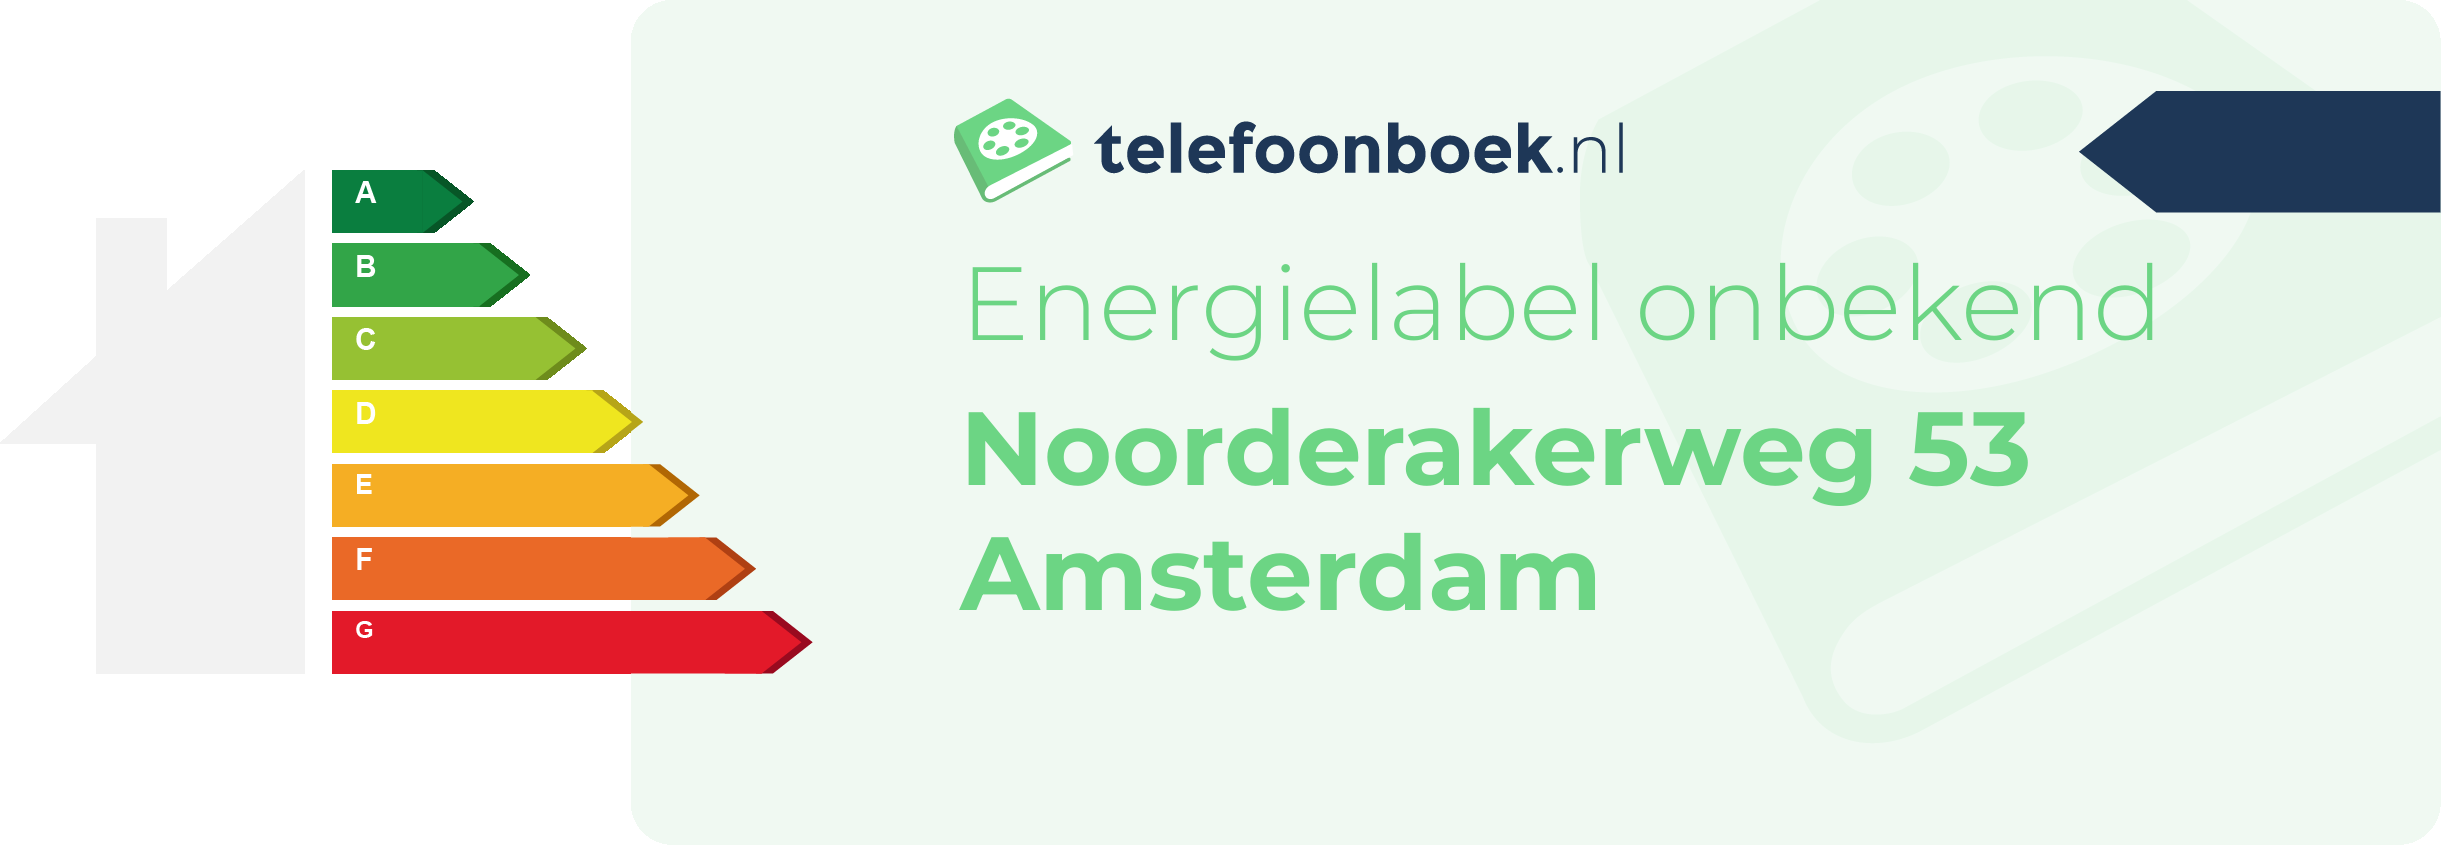 Energielabel Noorderakerweg 53 Amsterdam